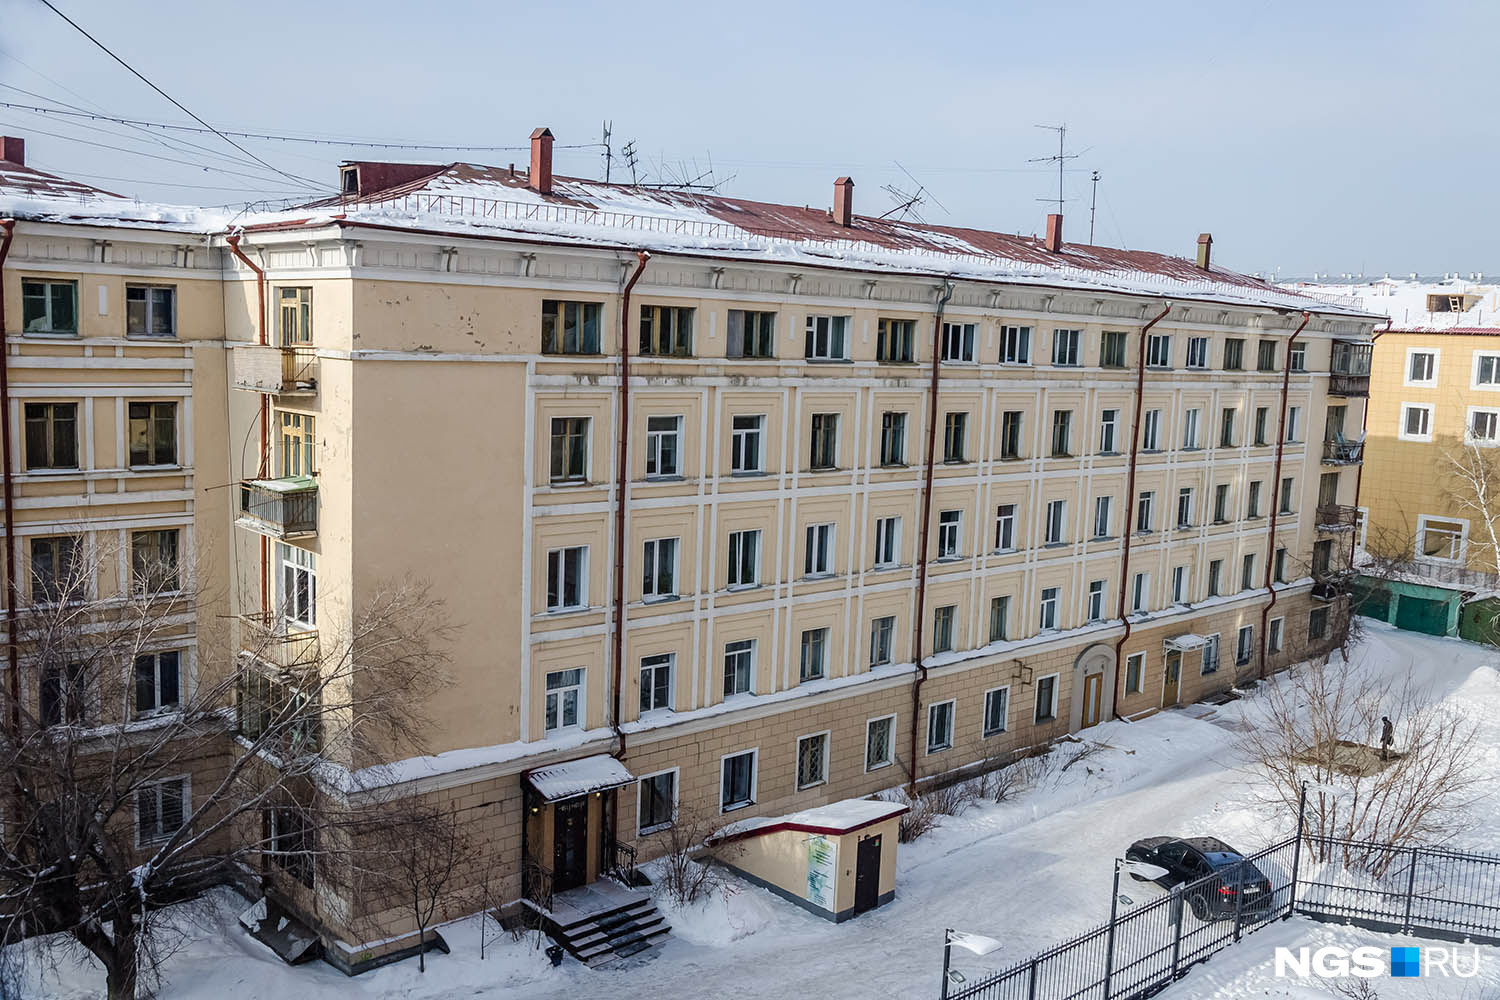 Долгое время «Дом артистов» оставался одним из самых протяженных жилых домов Новосибирска — его длина превышает 55 м.